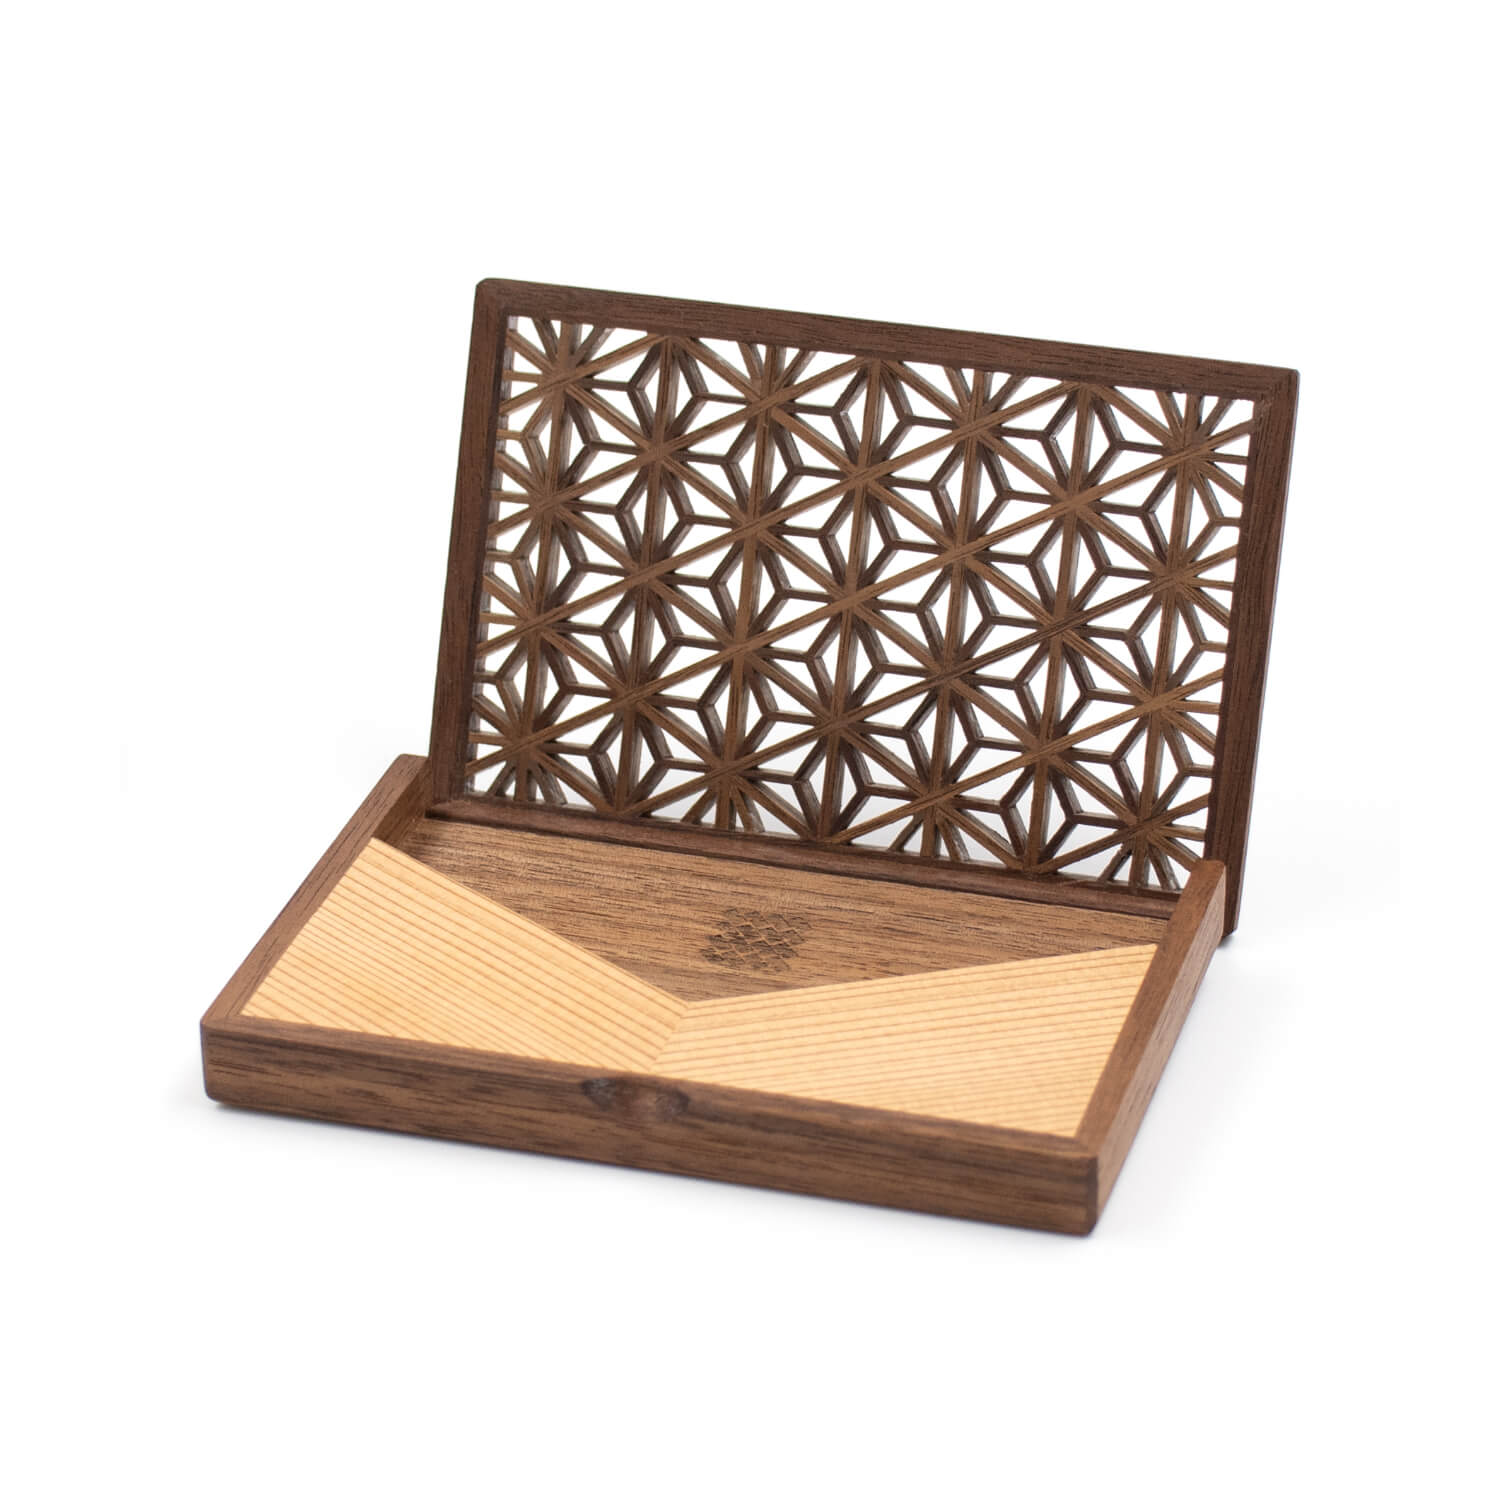 Enishi 組子細工のカードケース 木製 横型名刺入れ 名刺入れ 名刺 